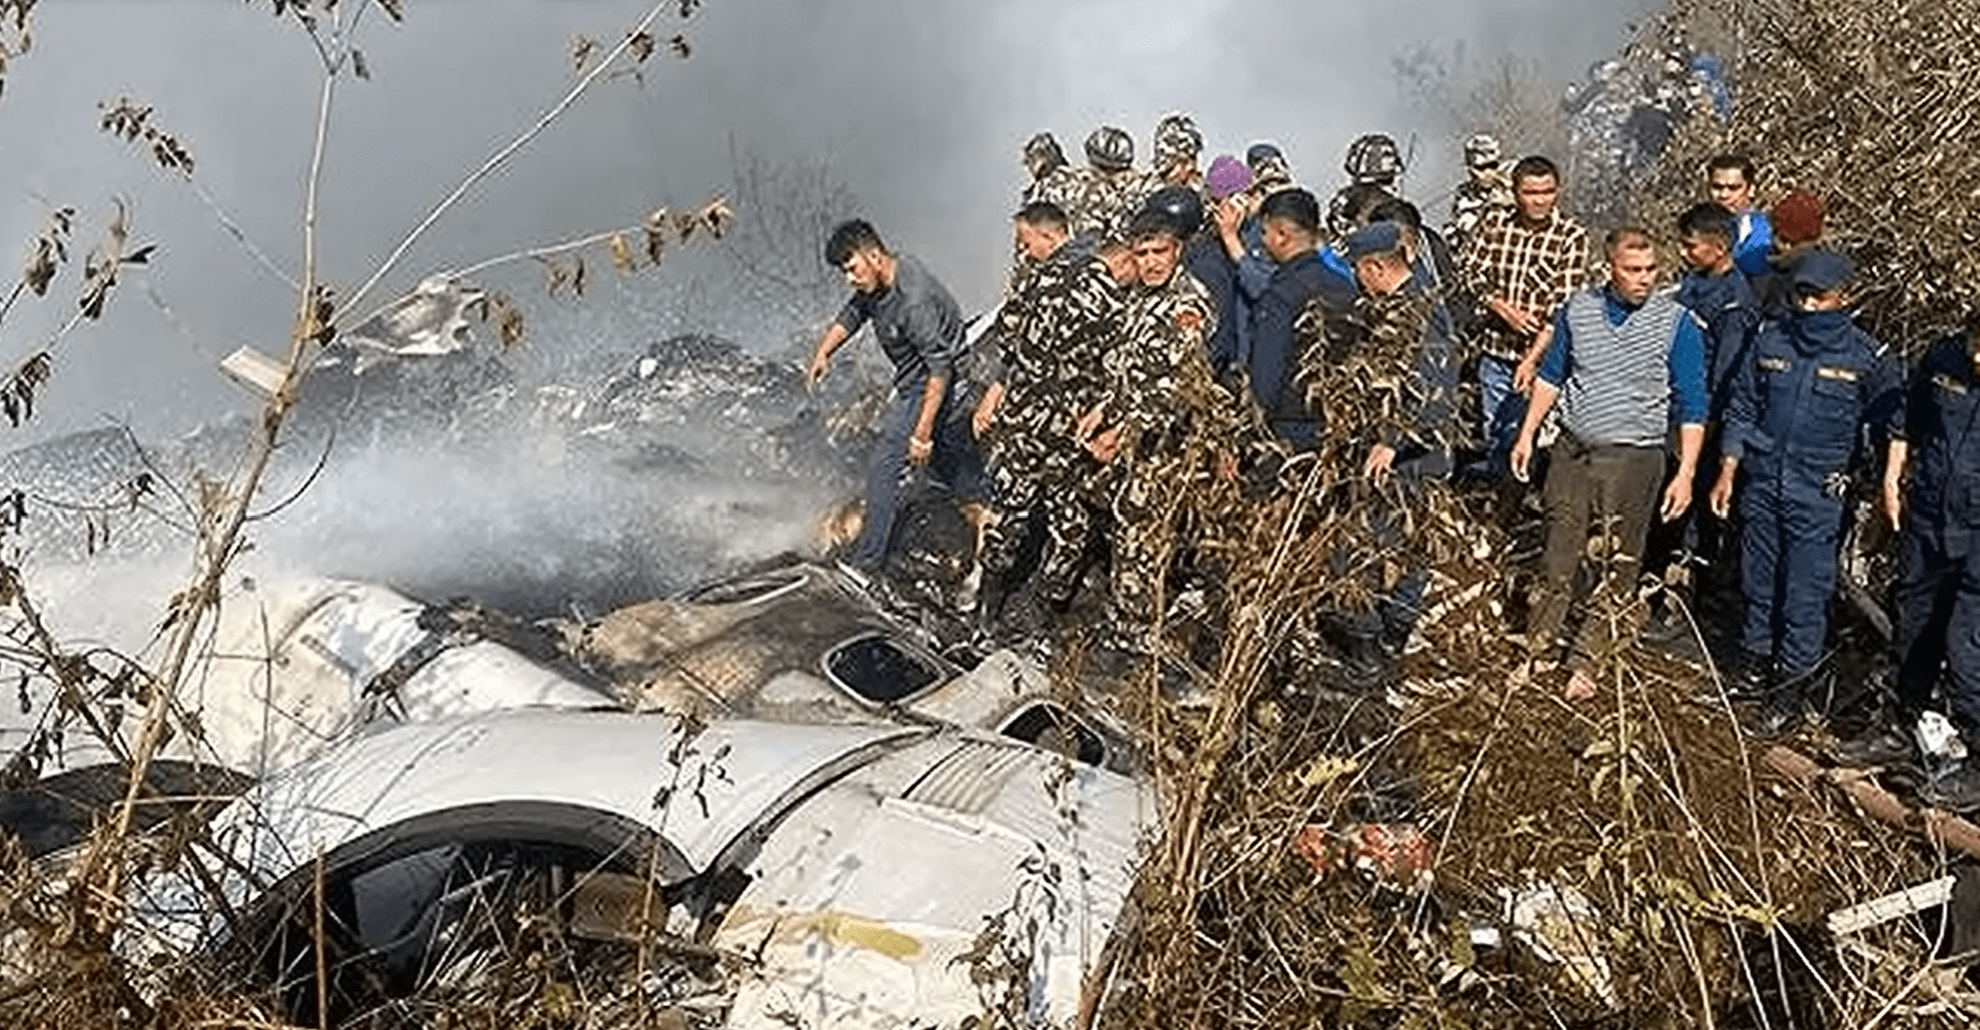 Посольство РФ в Непале сообщило, что на борту разбившегося самолета находилось 4 россиянина